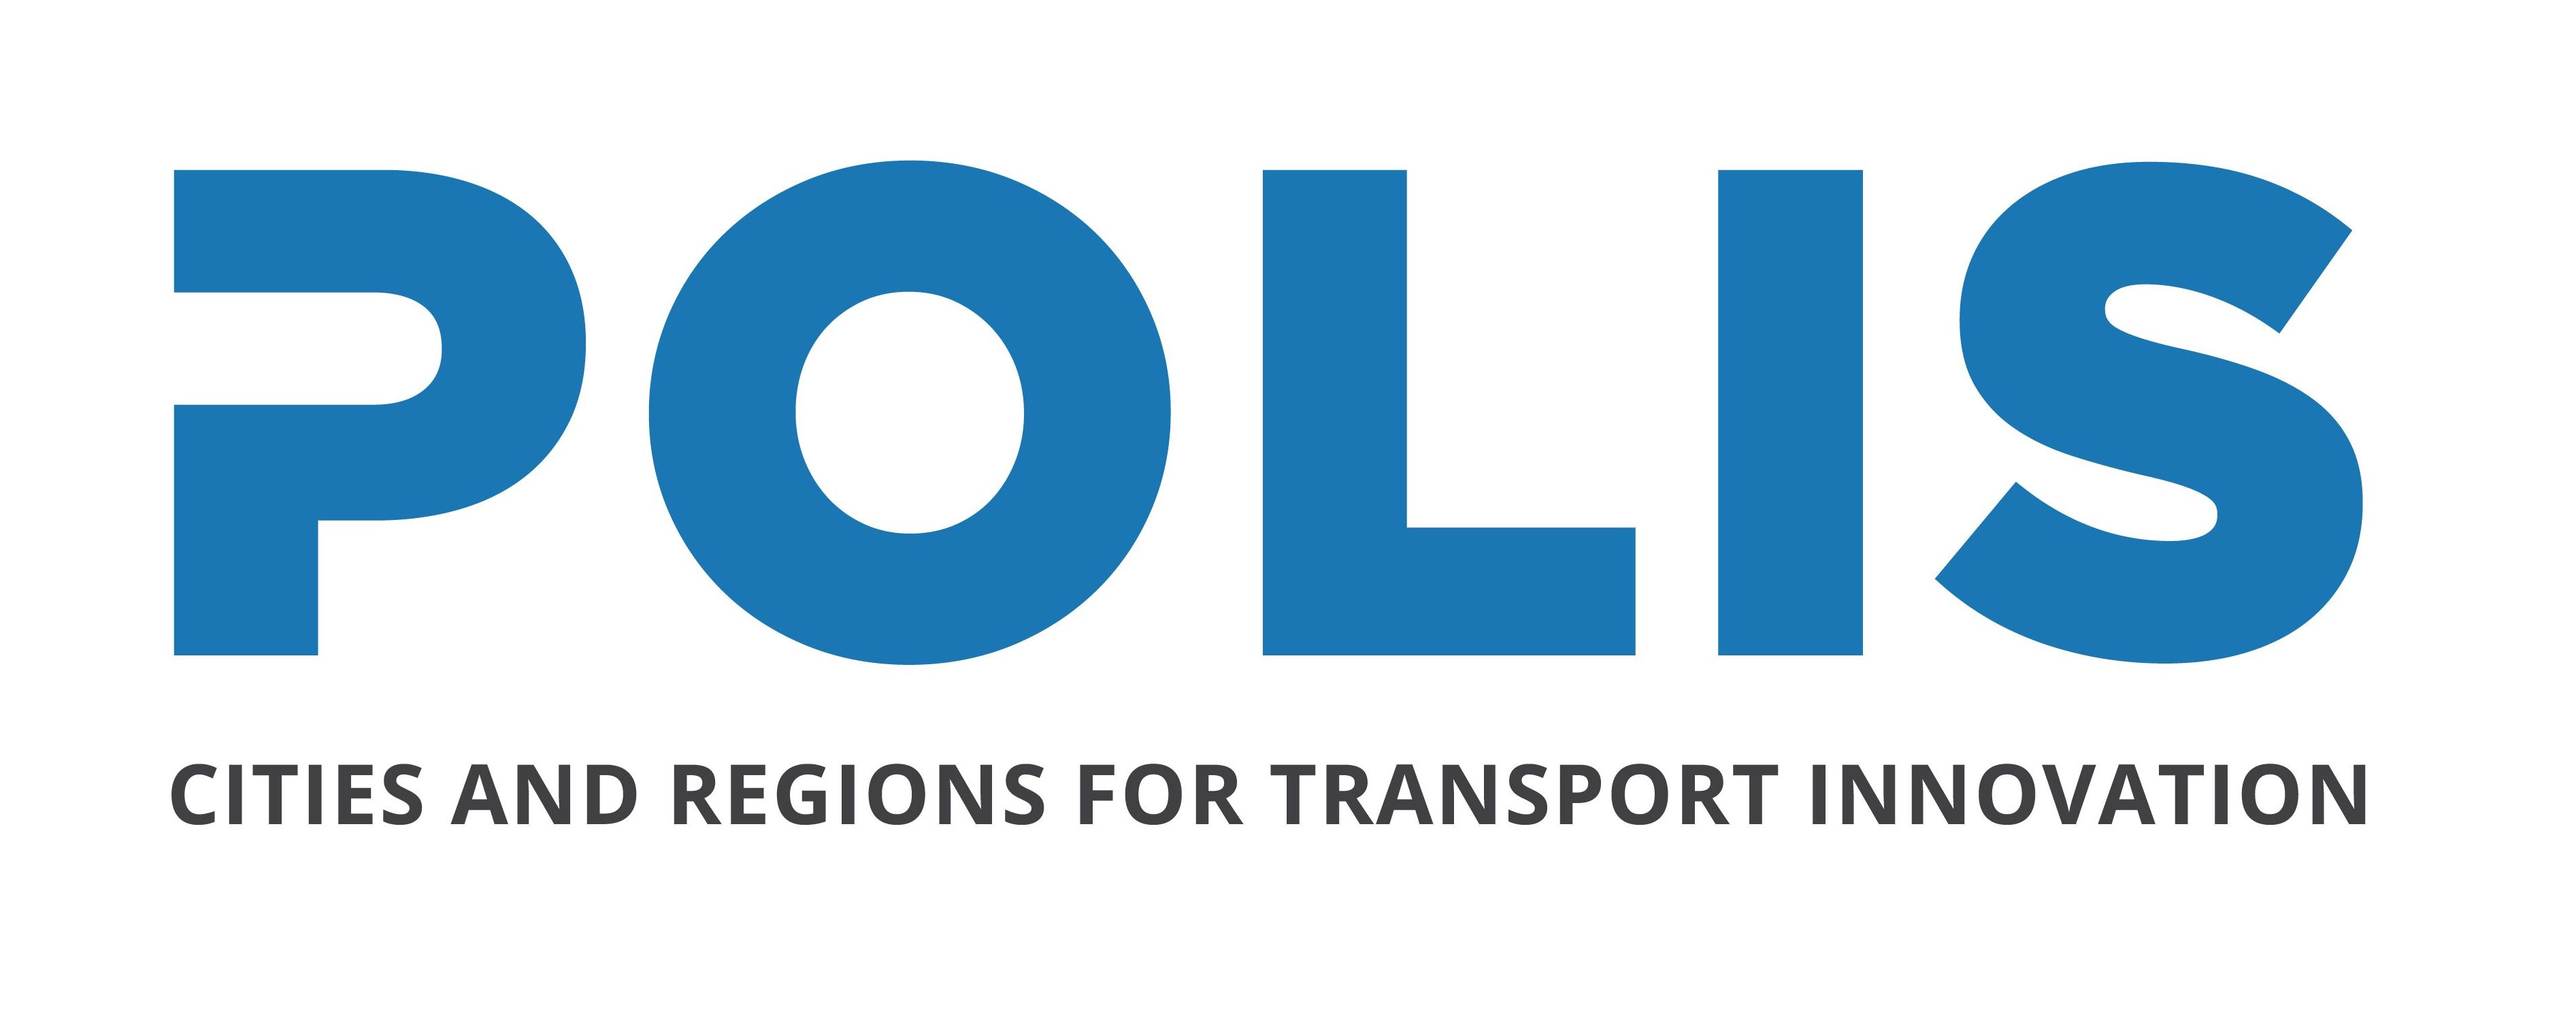 POLIS logo